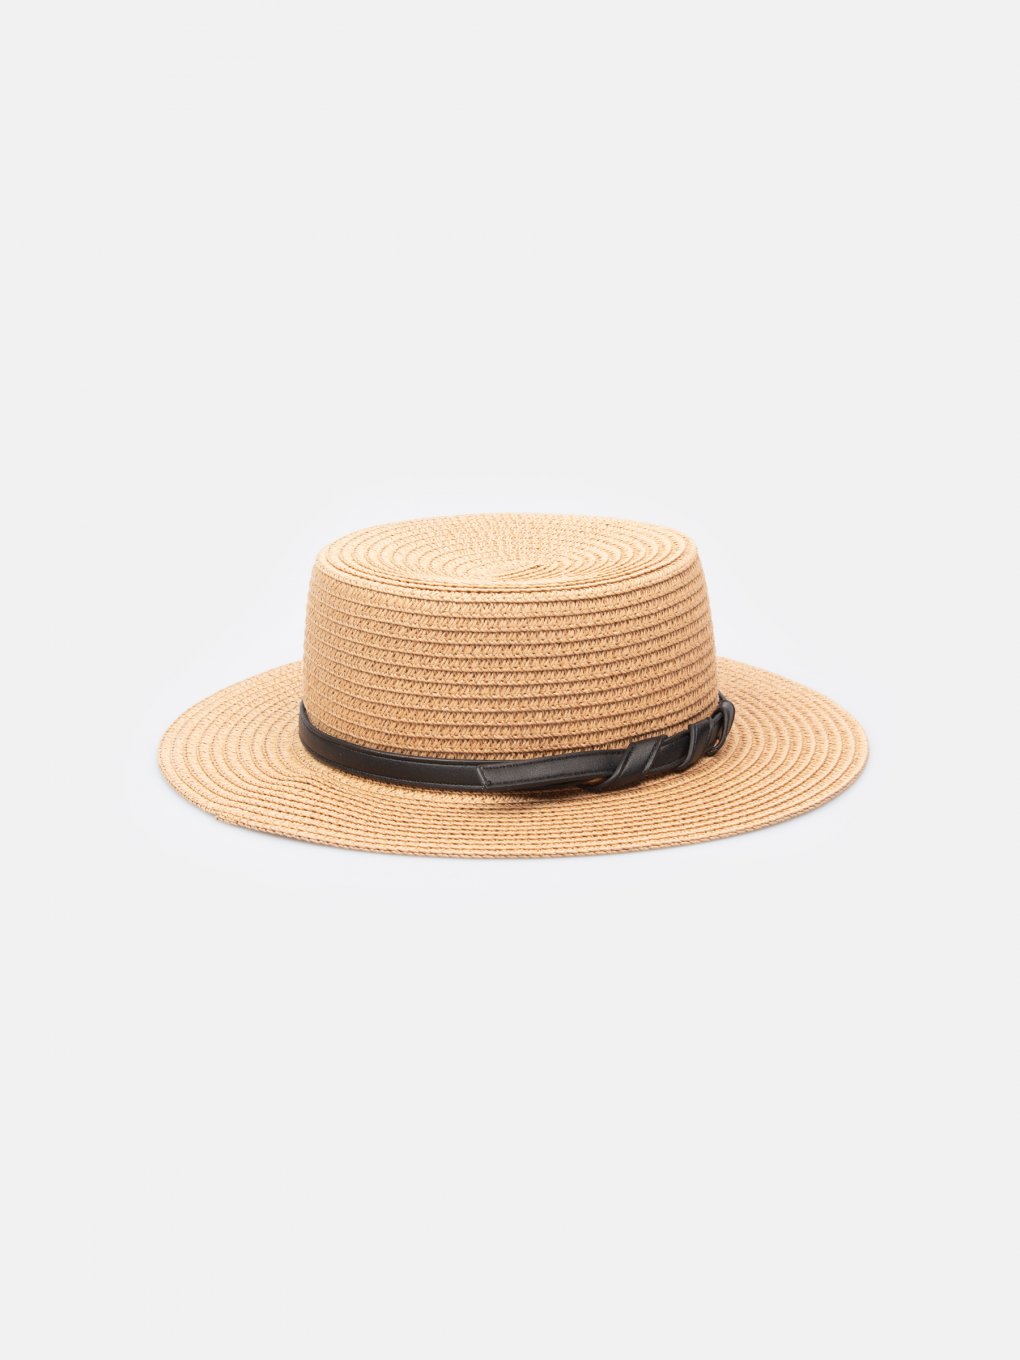 Dámský slaměný klobouk boater